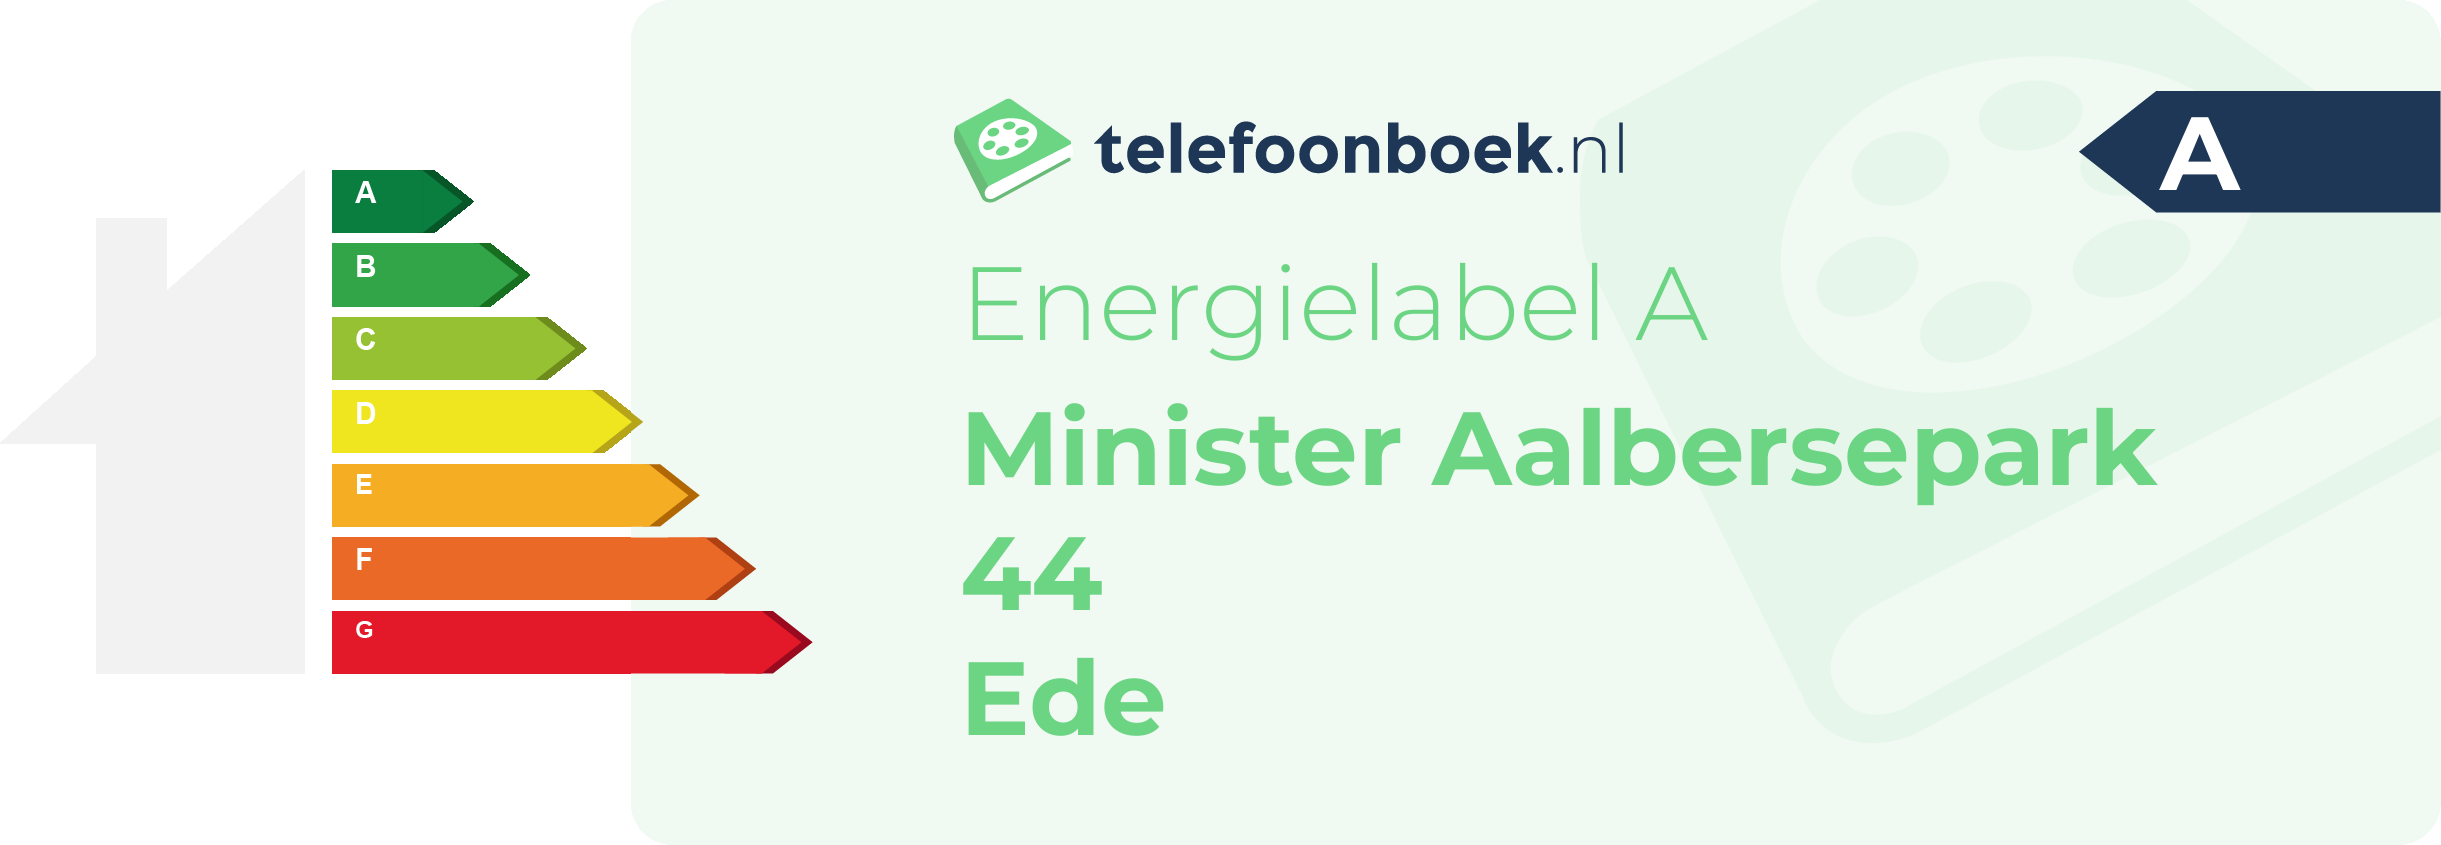 Energielabel Minister Aalbersepark 44 Ede